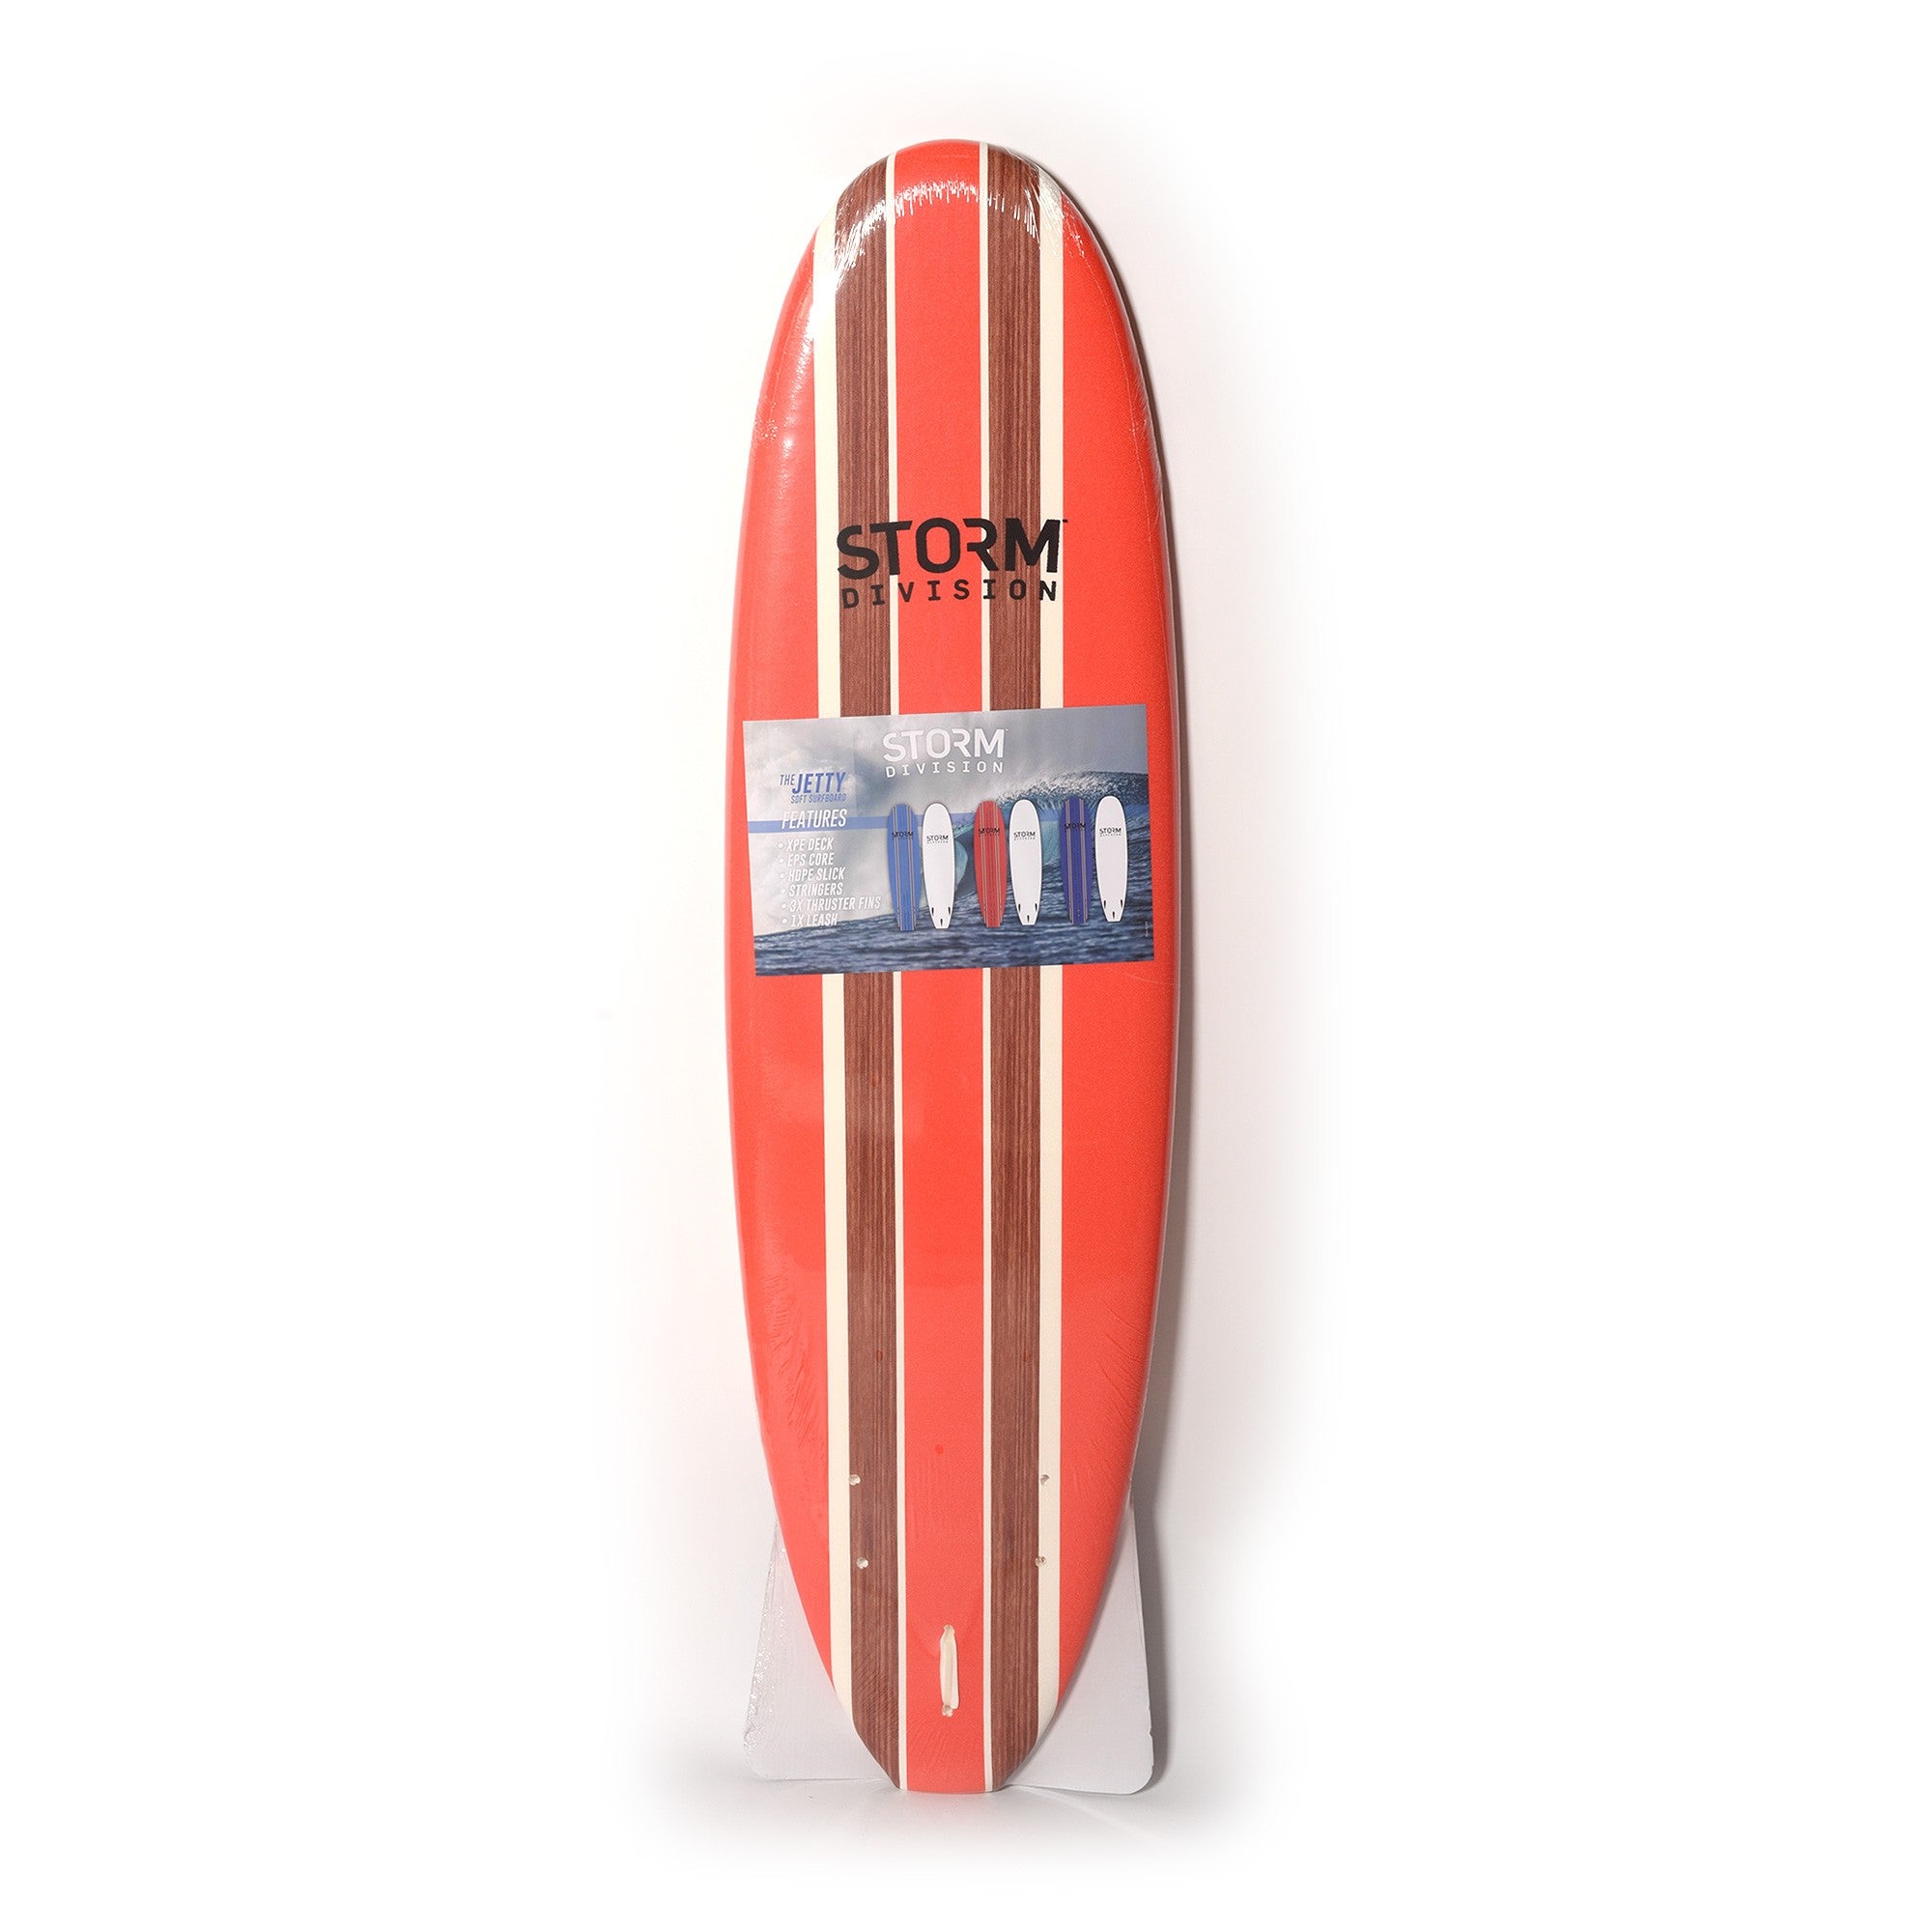 STORM DIVISION - Jetty Softboard - Tabla de surf de espuma - 6'2 - Rojo